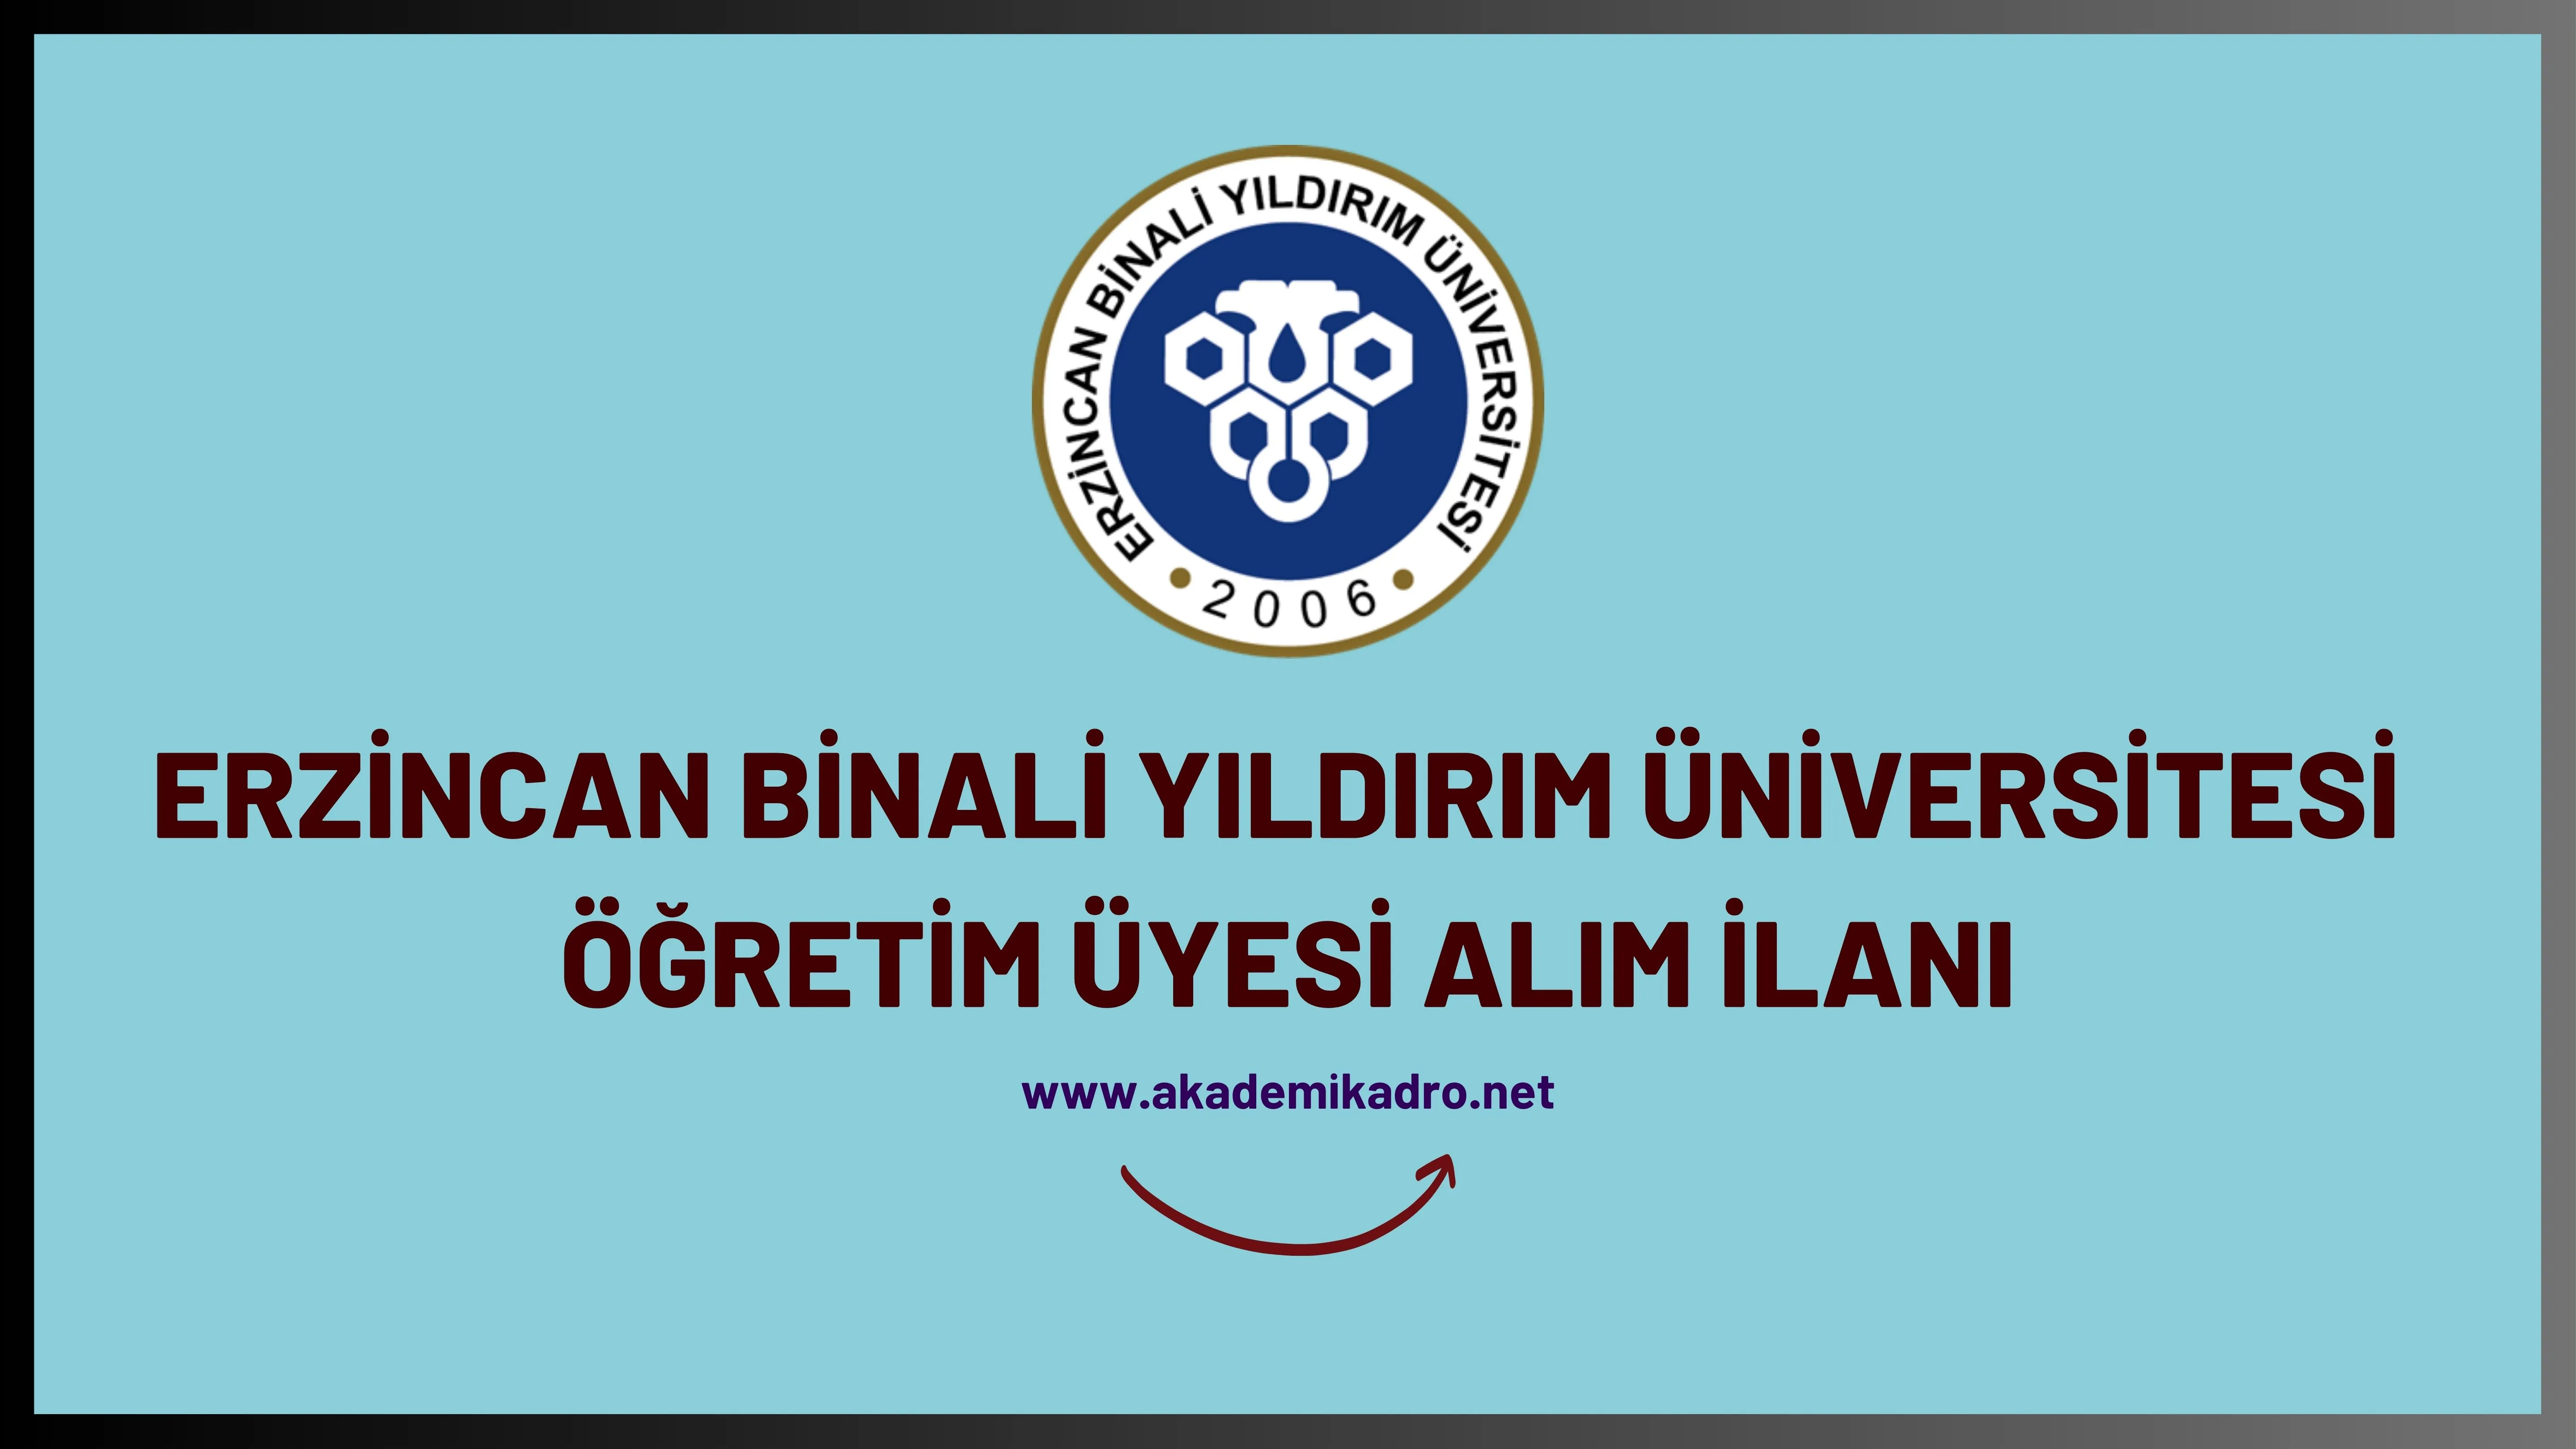 Erzincan Binali Yıldırım Üniversitesi birçok alandan 52 Öğretim üyesi alacak. 